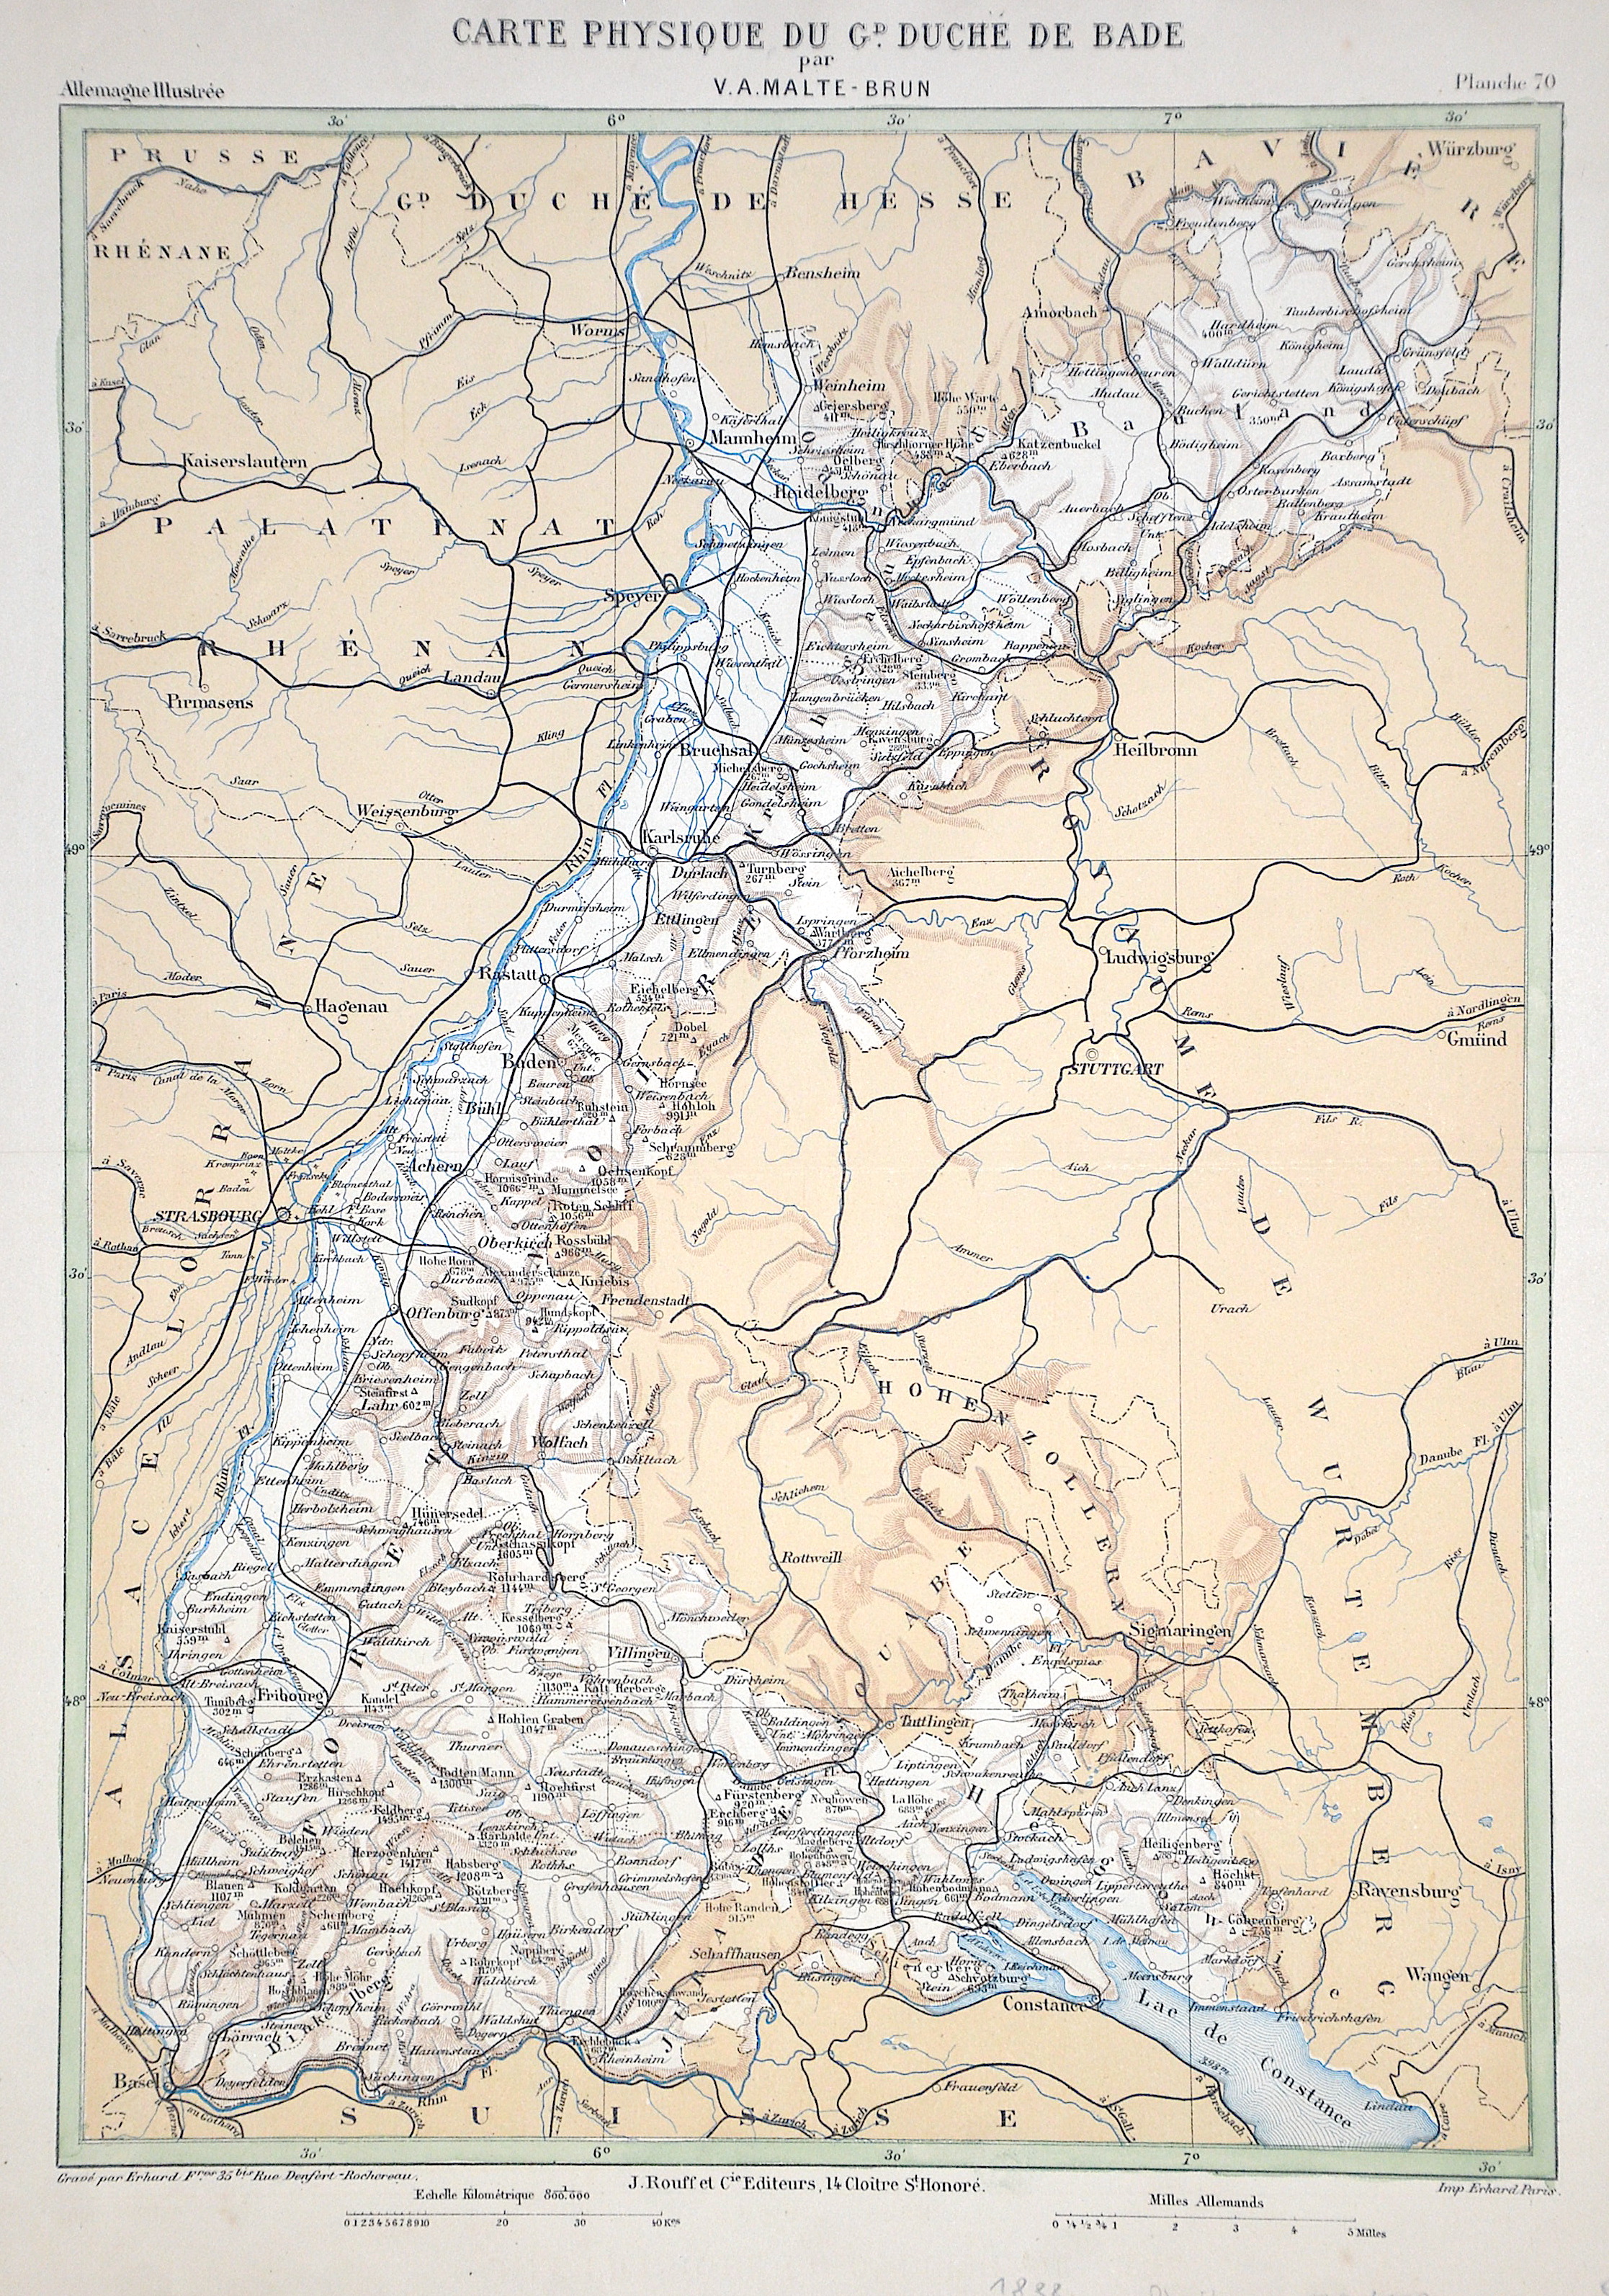 Malte-Brun  Carte physique du Gd. Duche de Bade par V. A. Malte-Brun